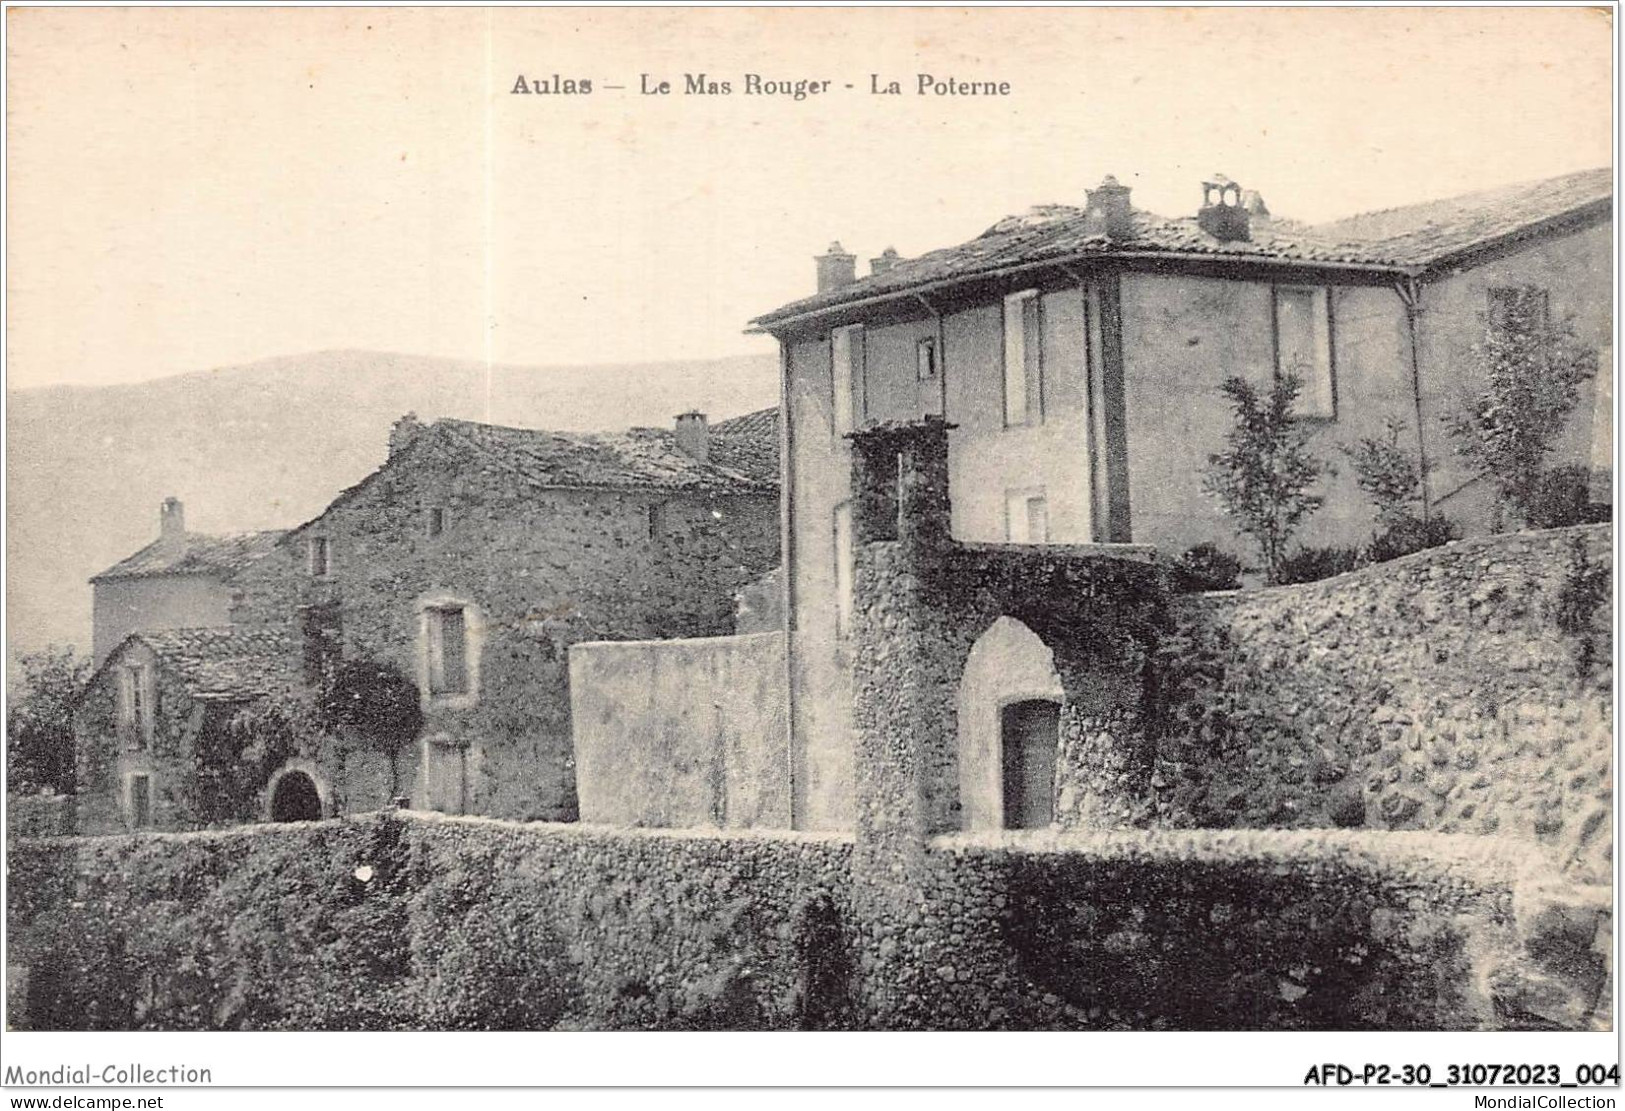 AFDP2-30-0131 - AULAS - Le Mas Rouger - La Poterne - Le Vigan